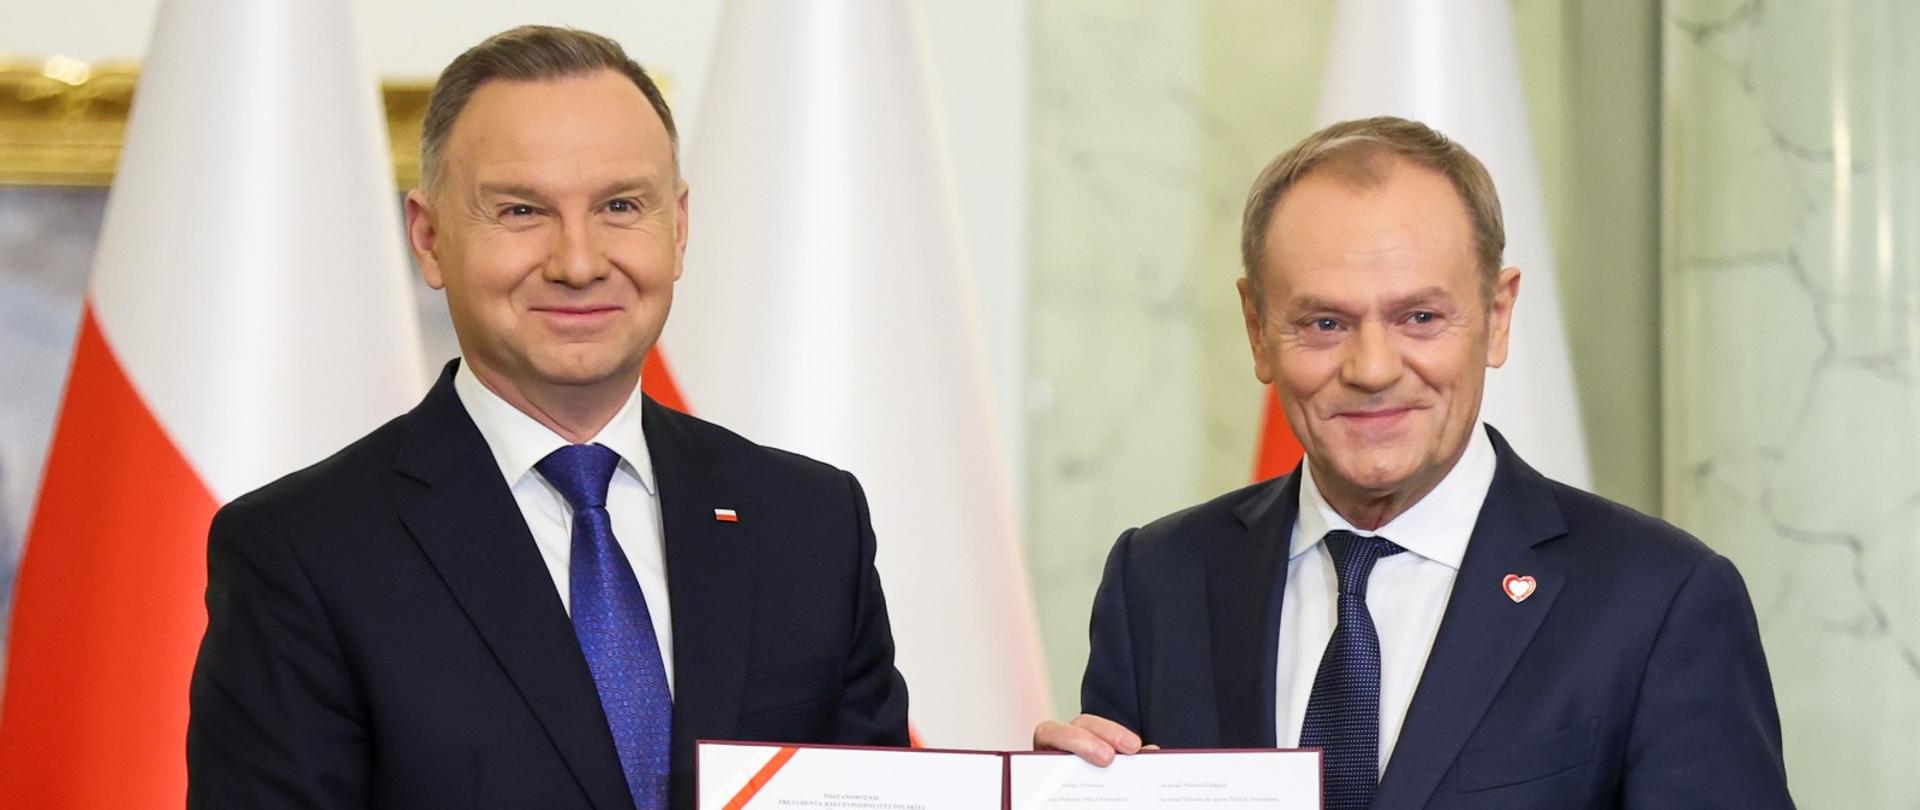 Prezydent Andrzej Duda i Premier Donald Tusk.